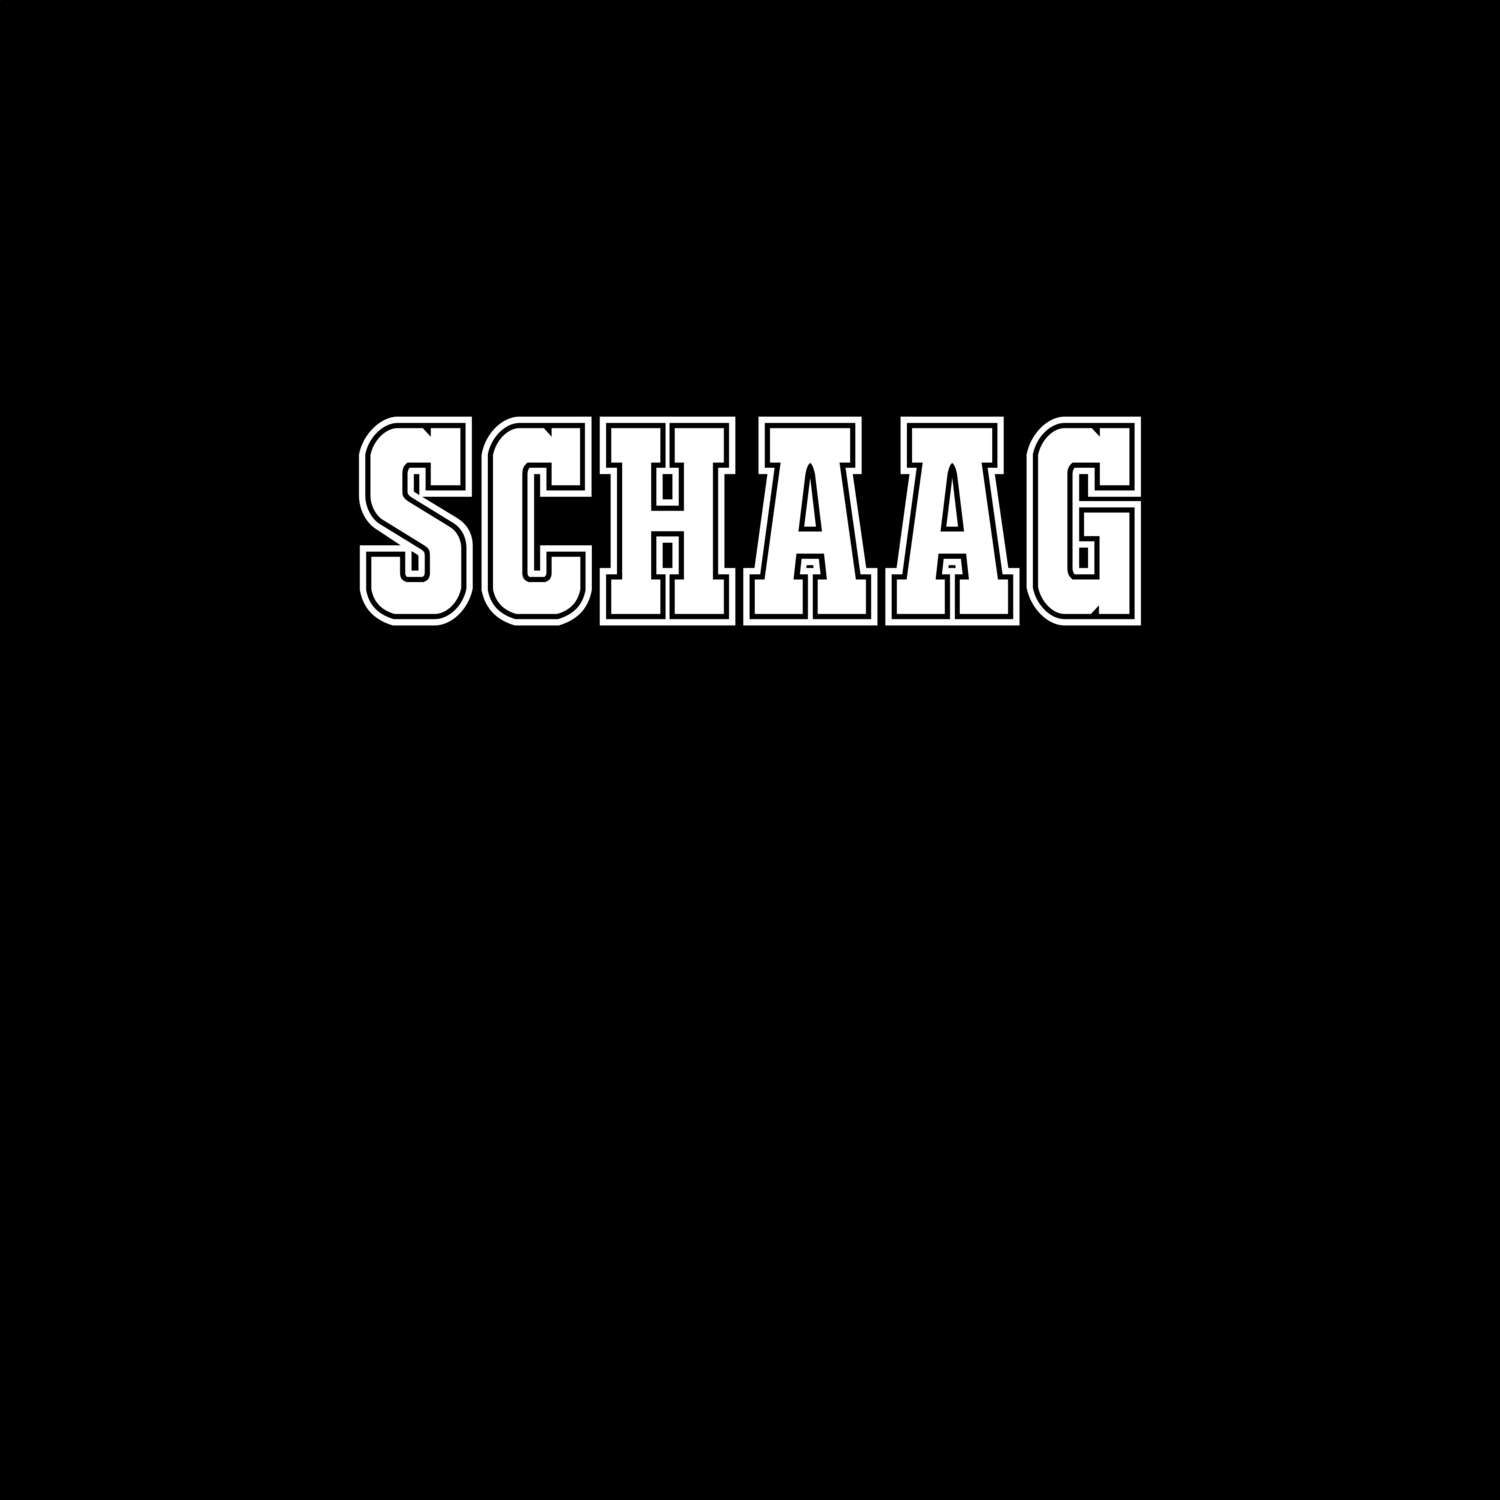 Schaag T-Shirt »Classic«